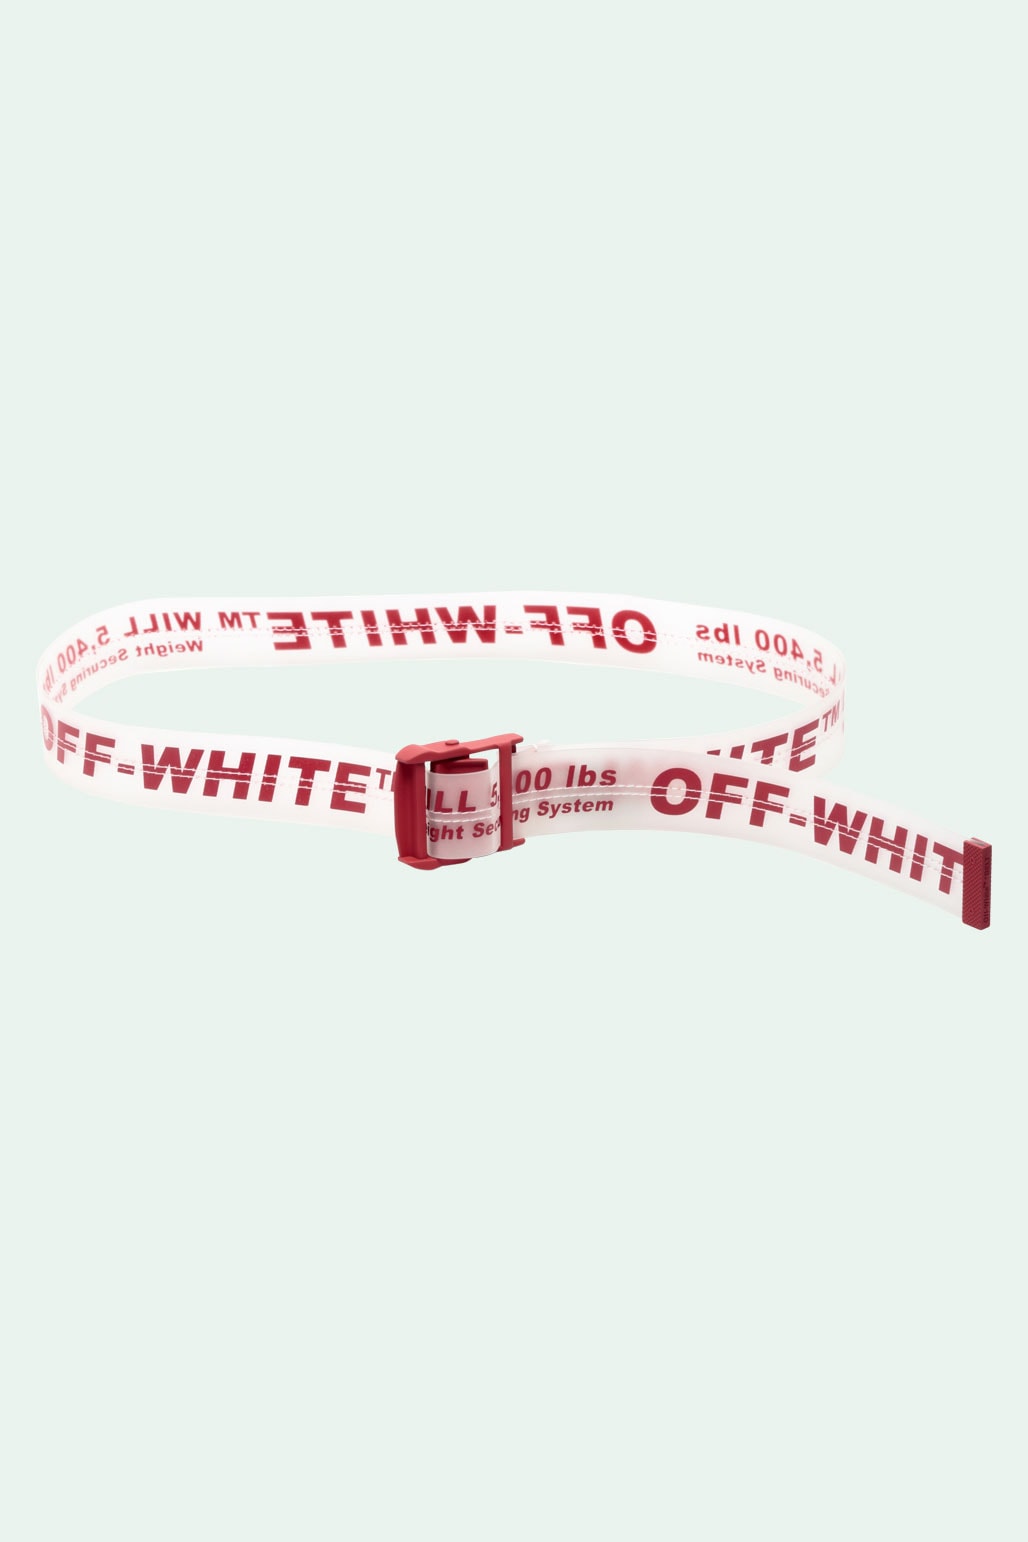 Off-White™ x Vitkac 2018 秋冬聯名系列正式上架